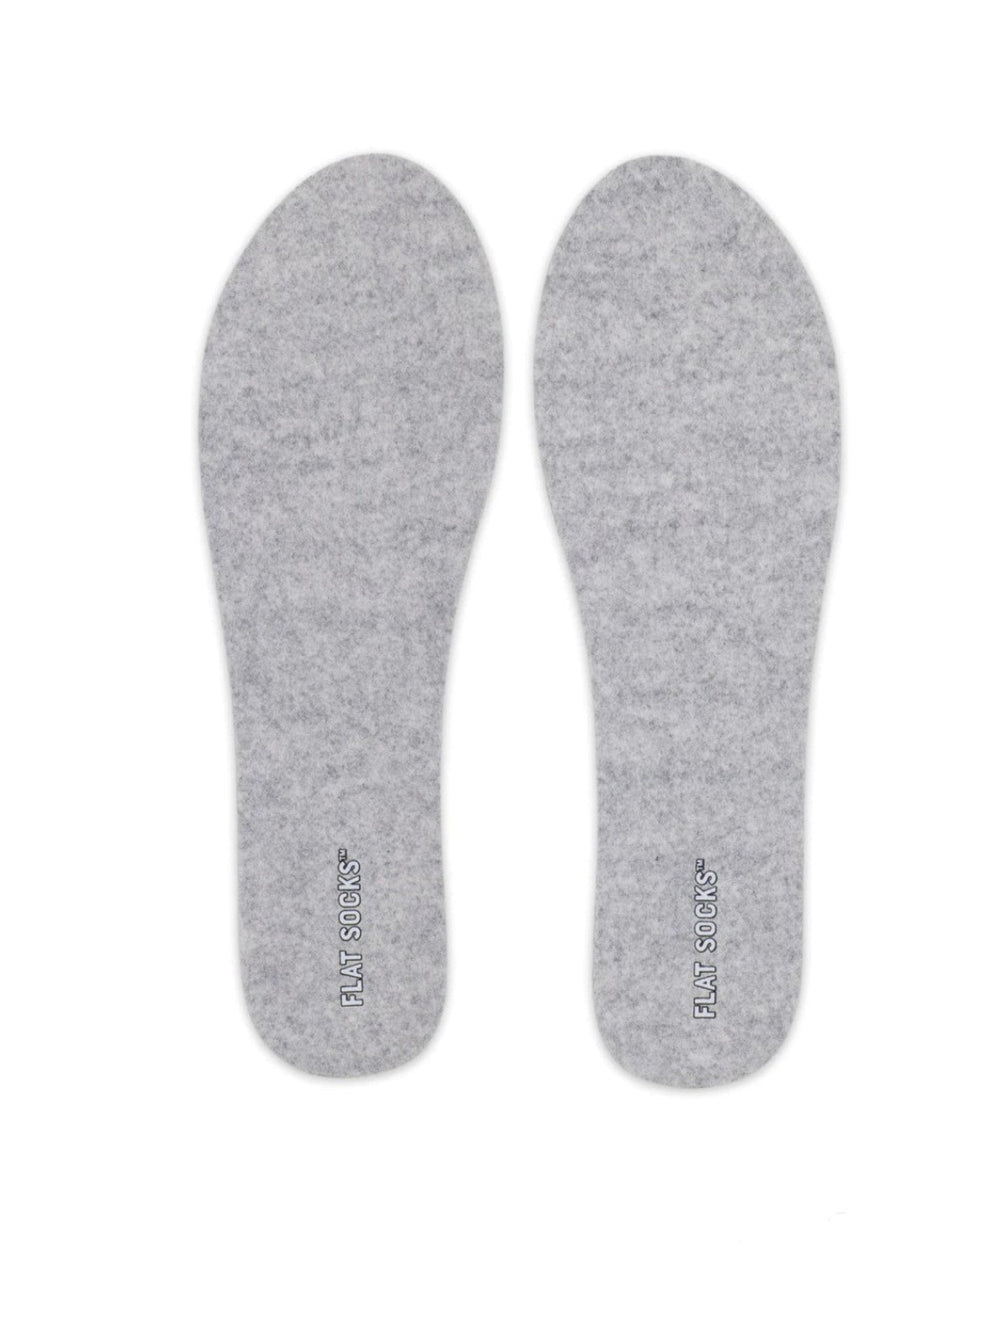 Flat Socks, Mens Light Heather Wool